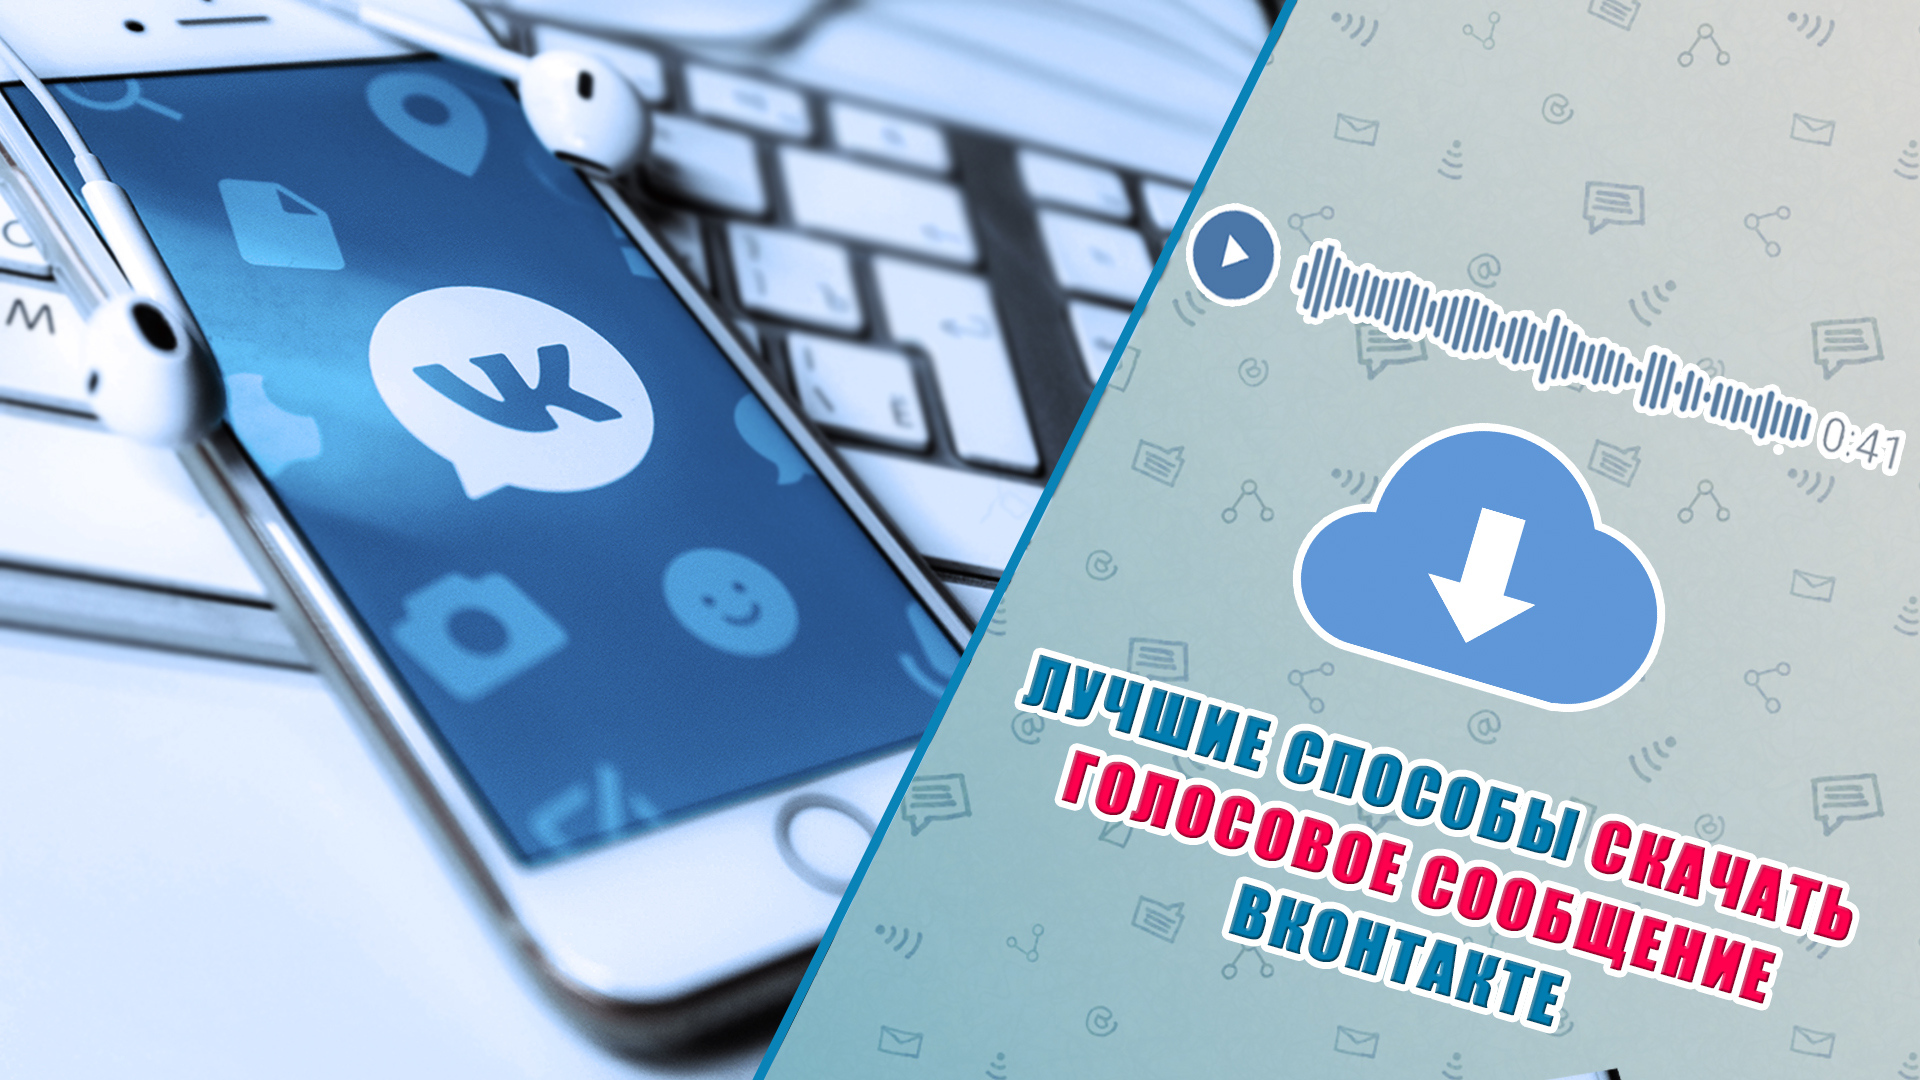 Коллаж: телефон с приложением ВКонтакте и описание темы заметки.